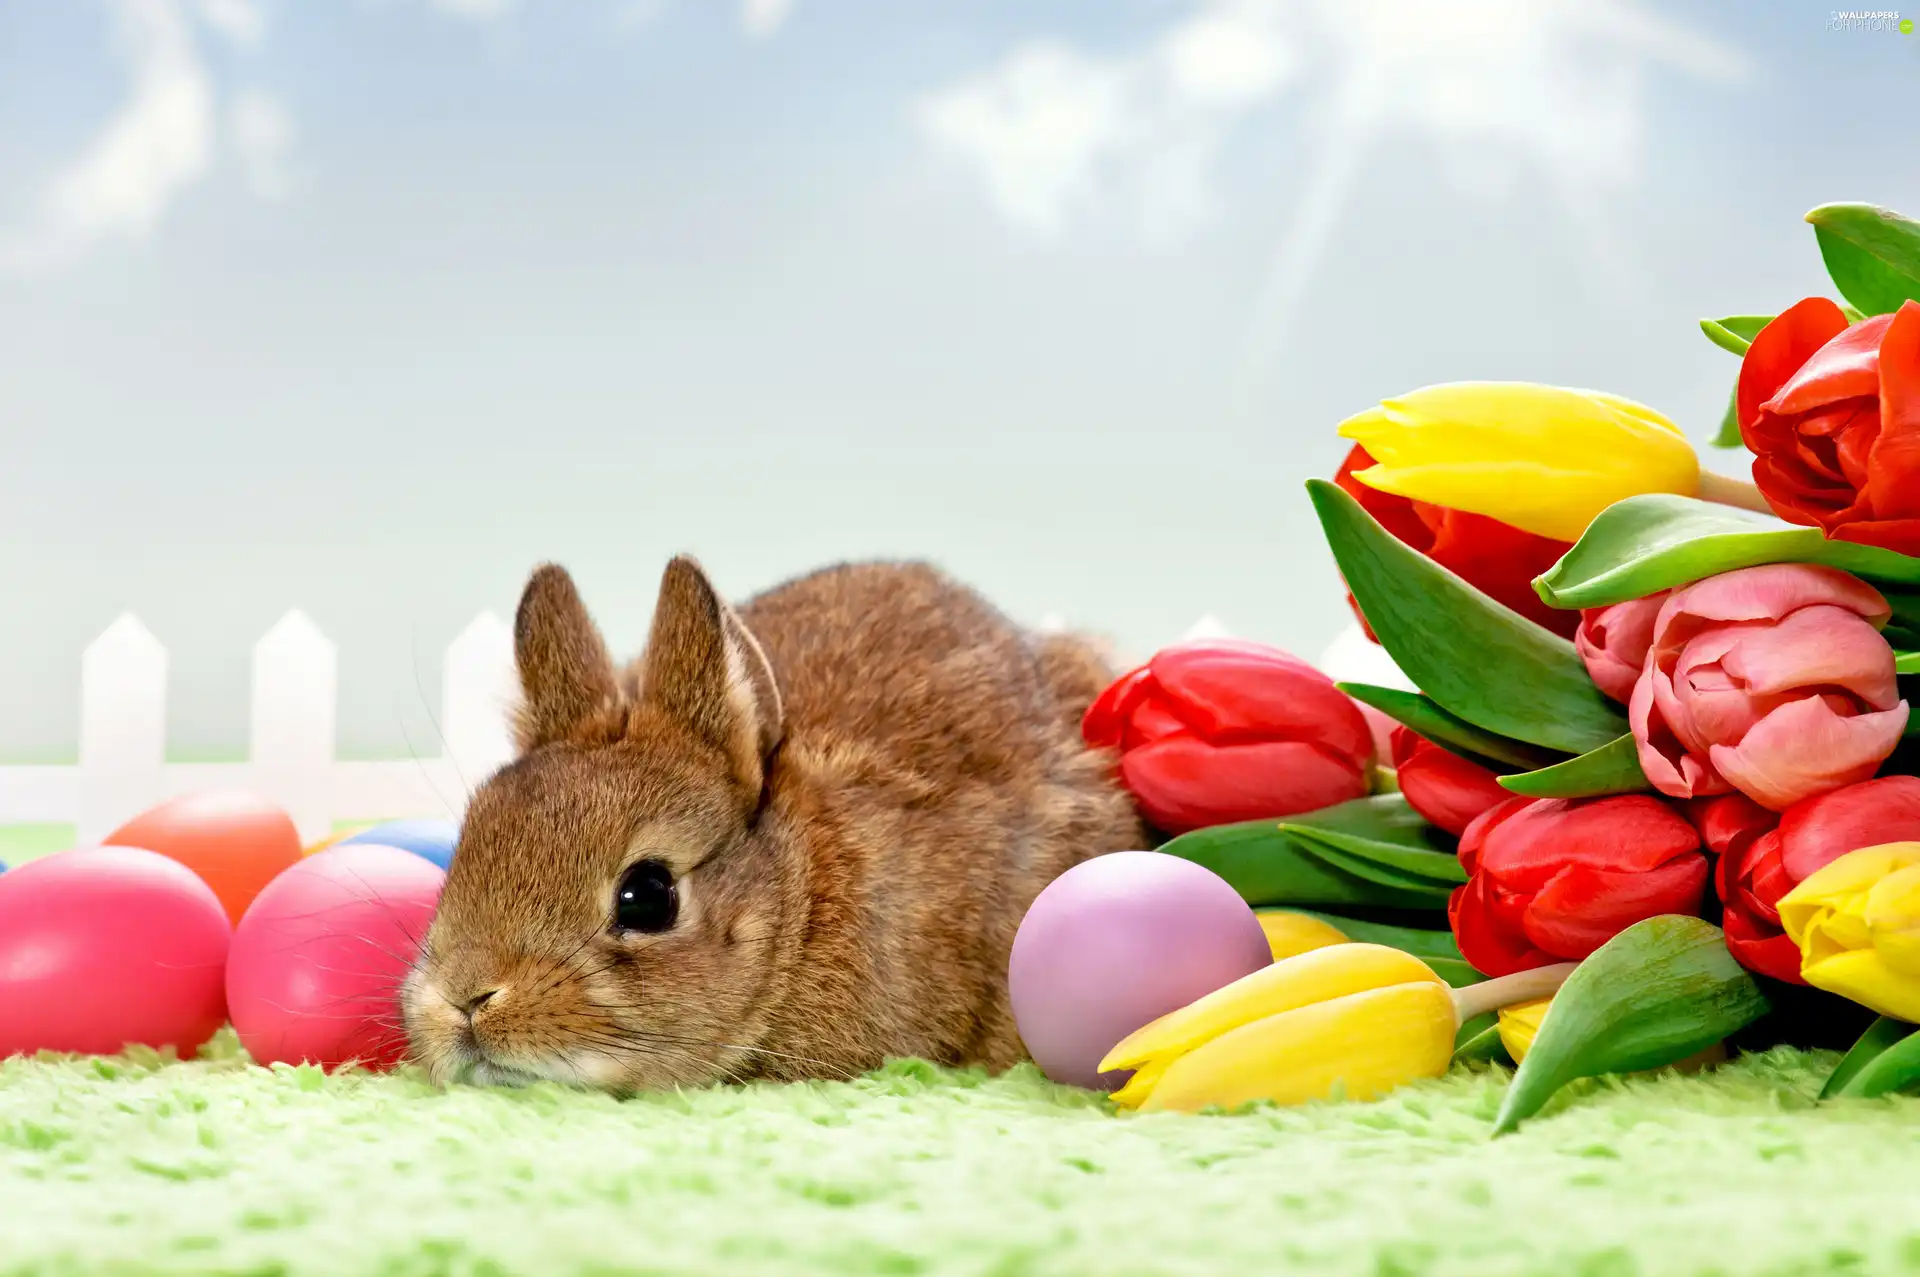 Rabbit, eggs, Easter, Tulips